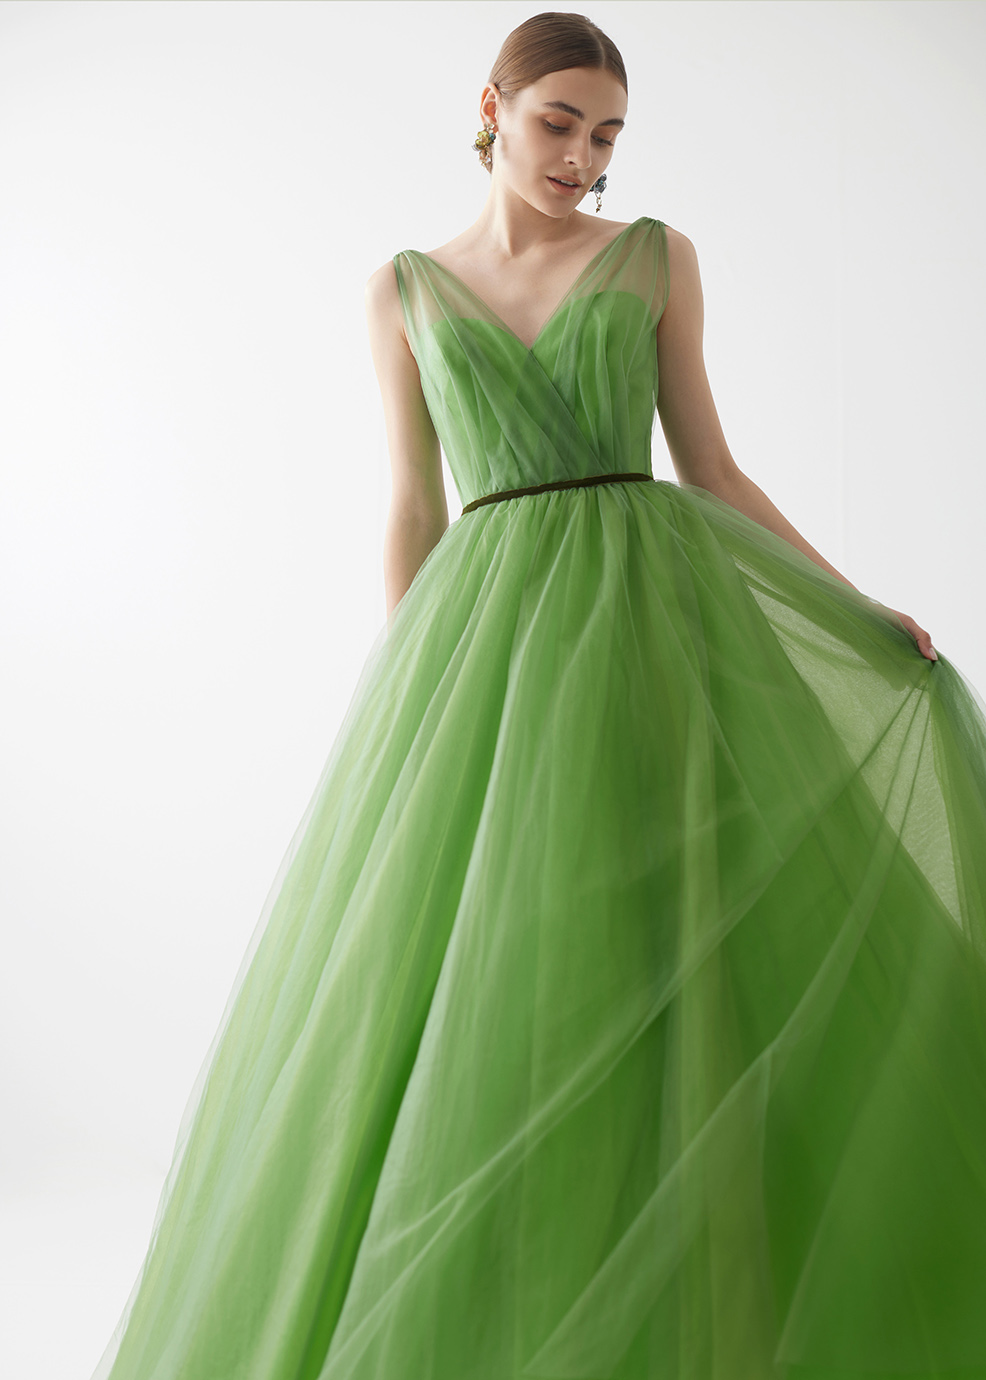 トレンド色のグリーン系カラードレス